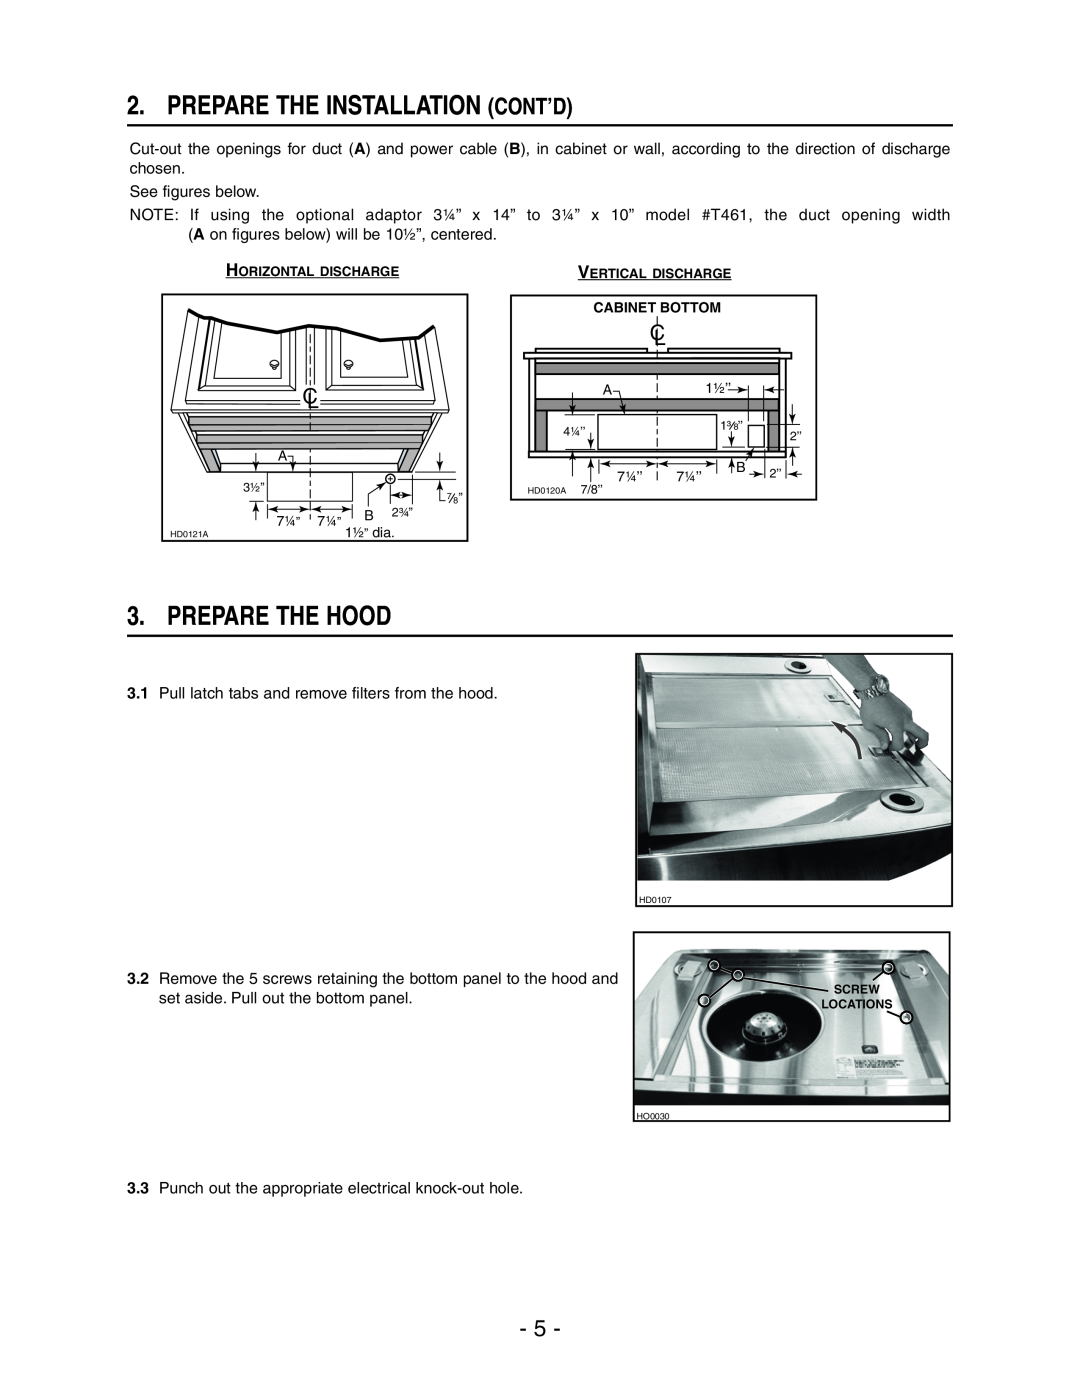 Broan E661 manual Prepare The Installation Cont’D, Prepare The Hood 